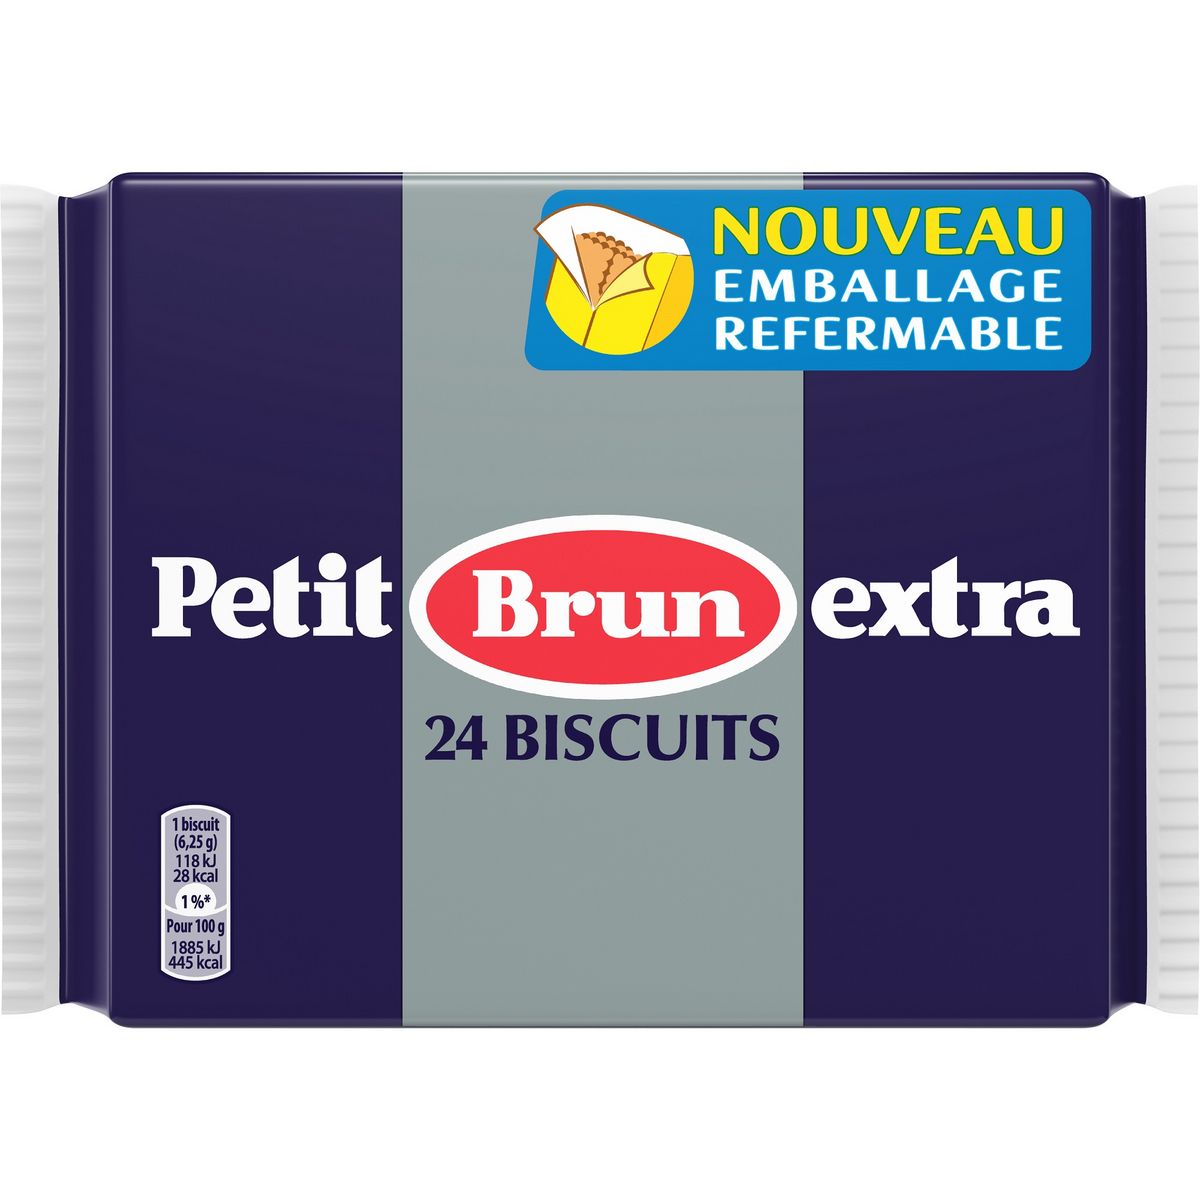 LU Petit brun extra 24 biscuits 150g